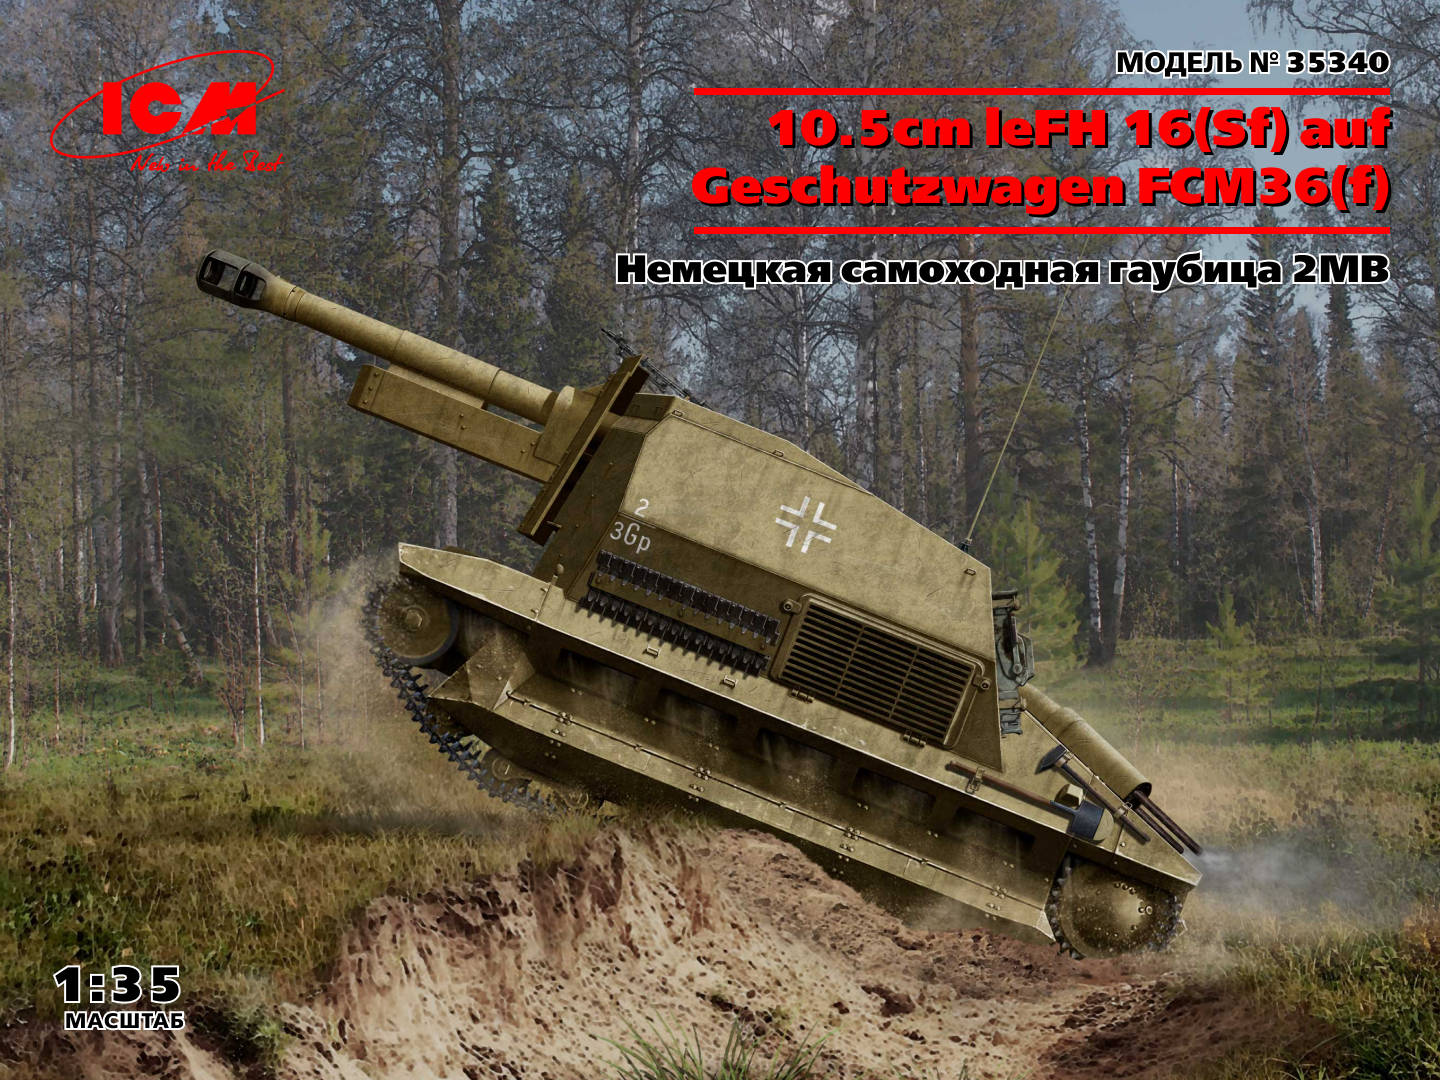 35340  техника и вооружение  10.5cm leFH 16(Sf) auf Geschutzwagen FCM36(f)  (1:35)